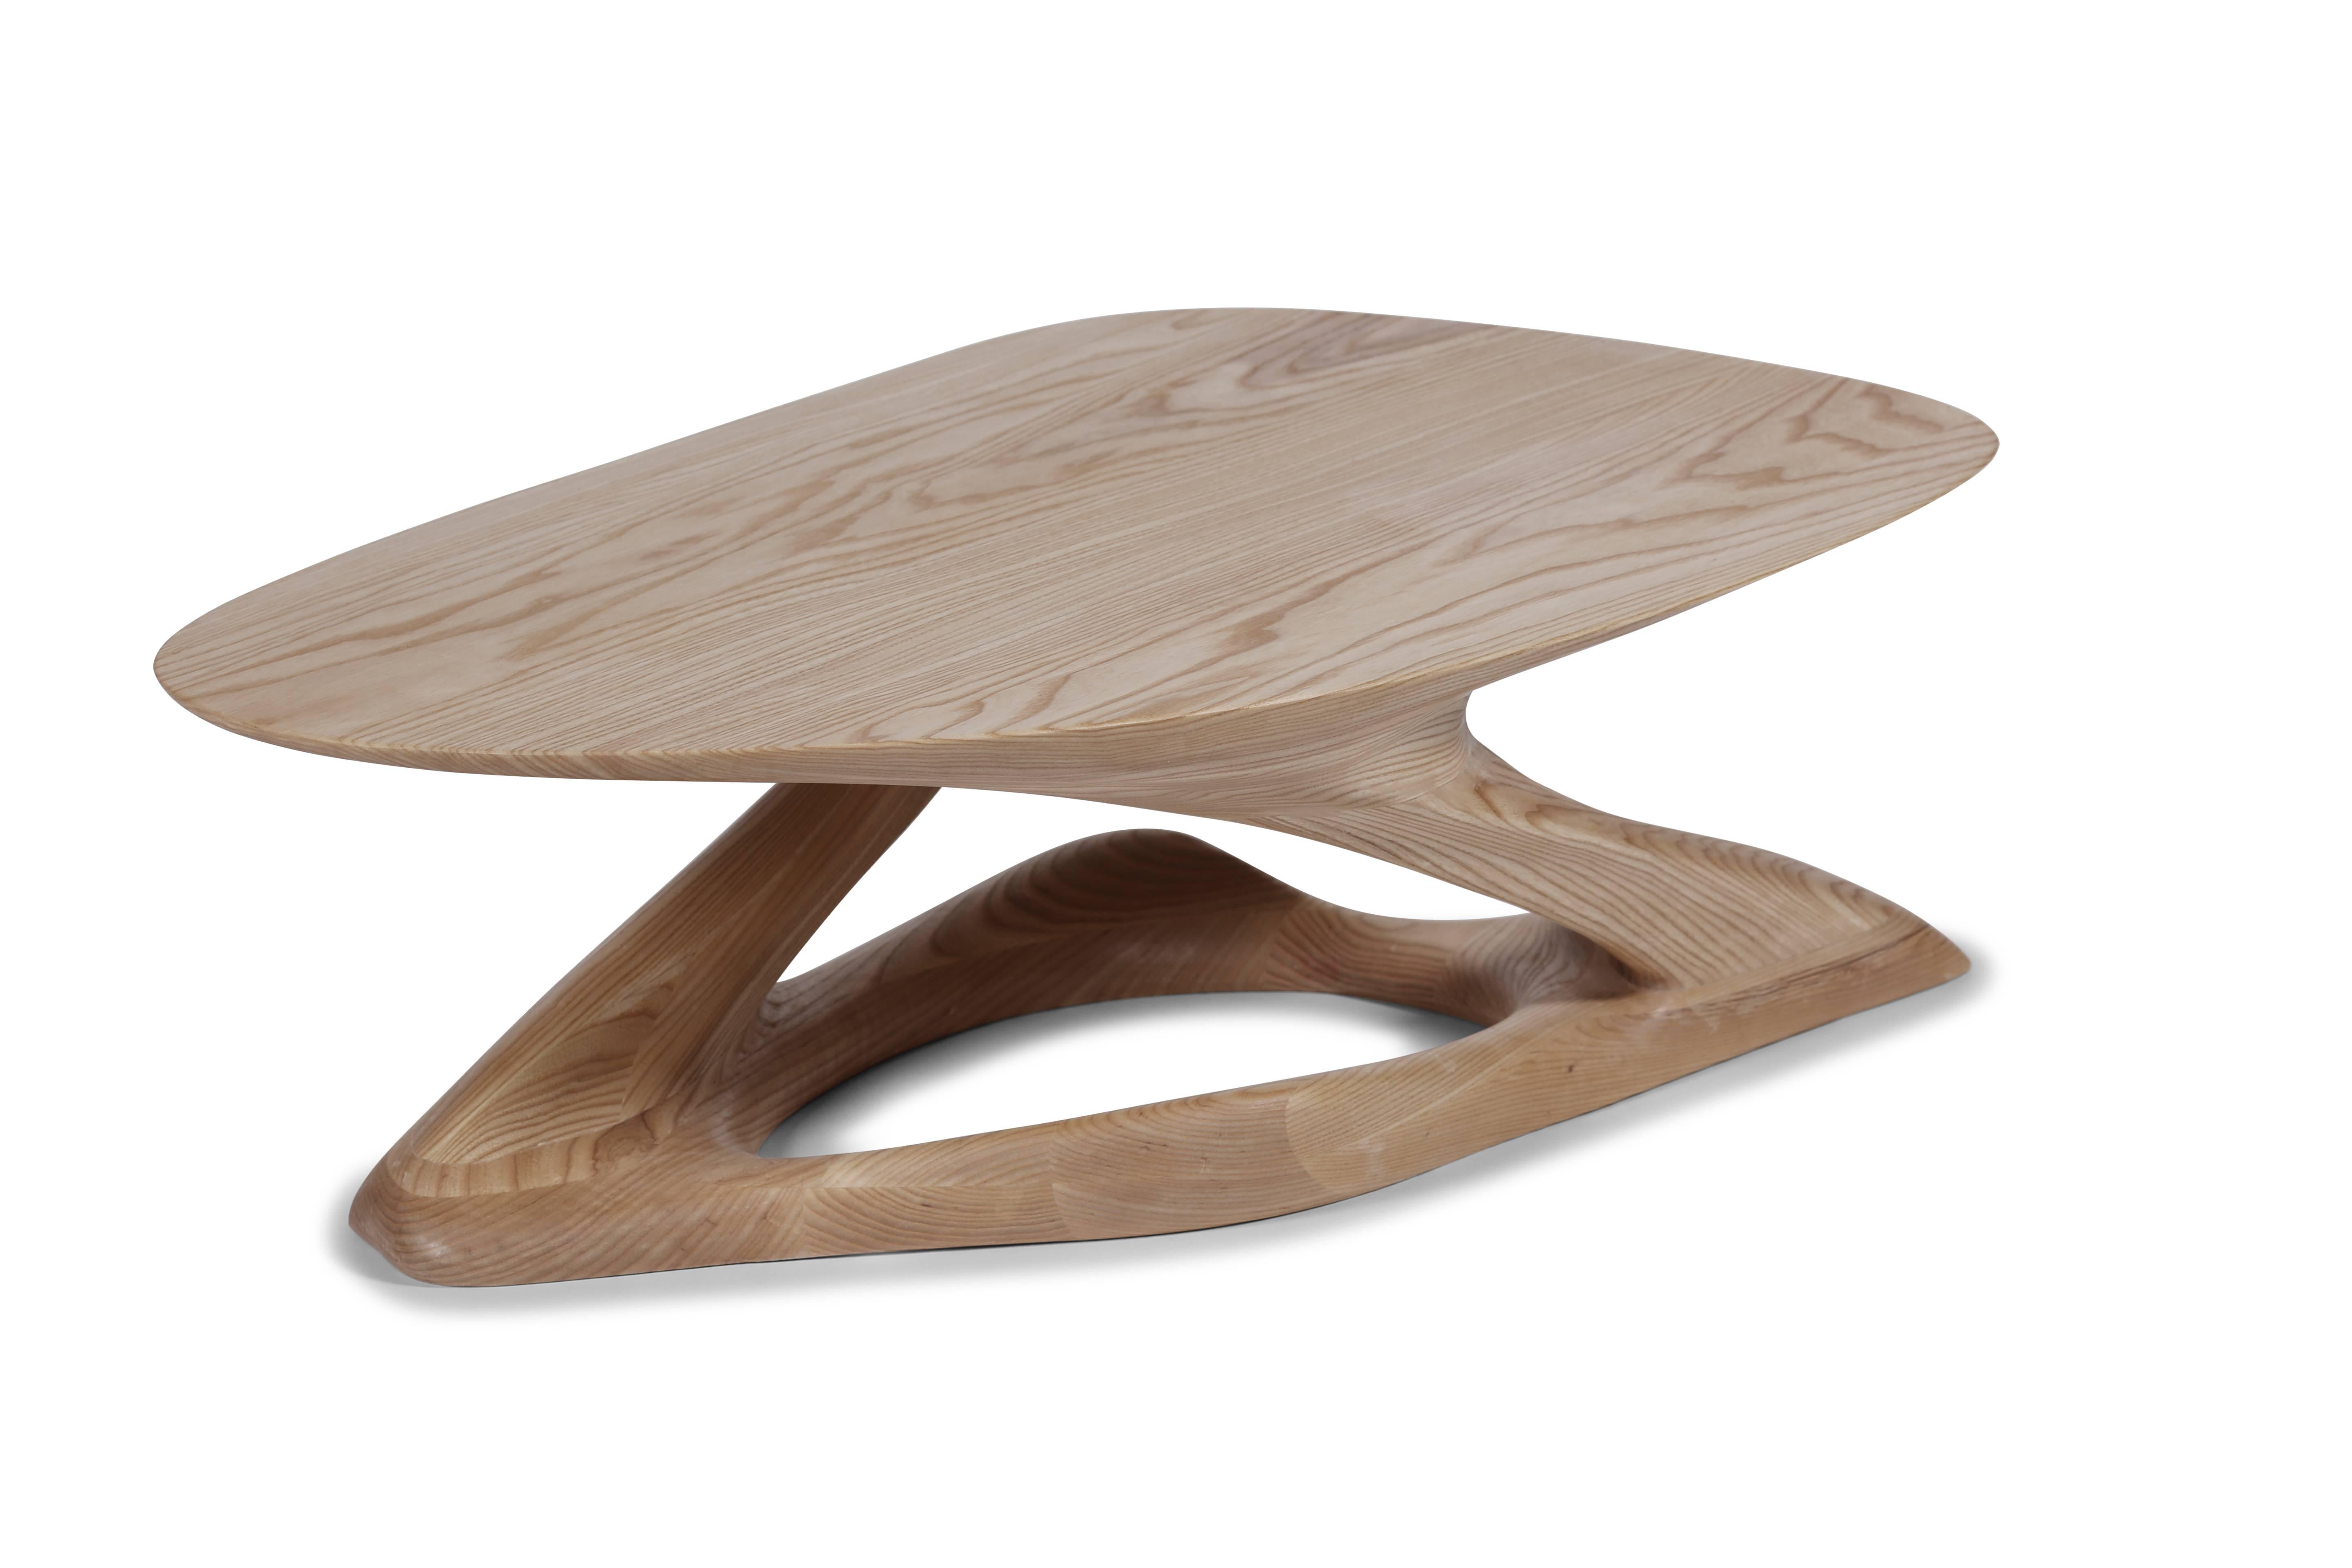 La table basse Plie est une table d'art sculpturale futuriste élégante avec une forme dynamique conçue et fabriquée par Amorph. Plie est fabriqué en frêne massif et teinté en noyer foncé. Par nature, l'aspect du grain de frêne sera légèrement